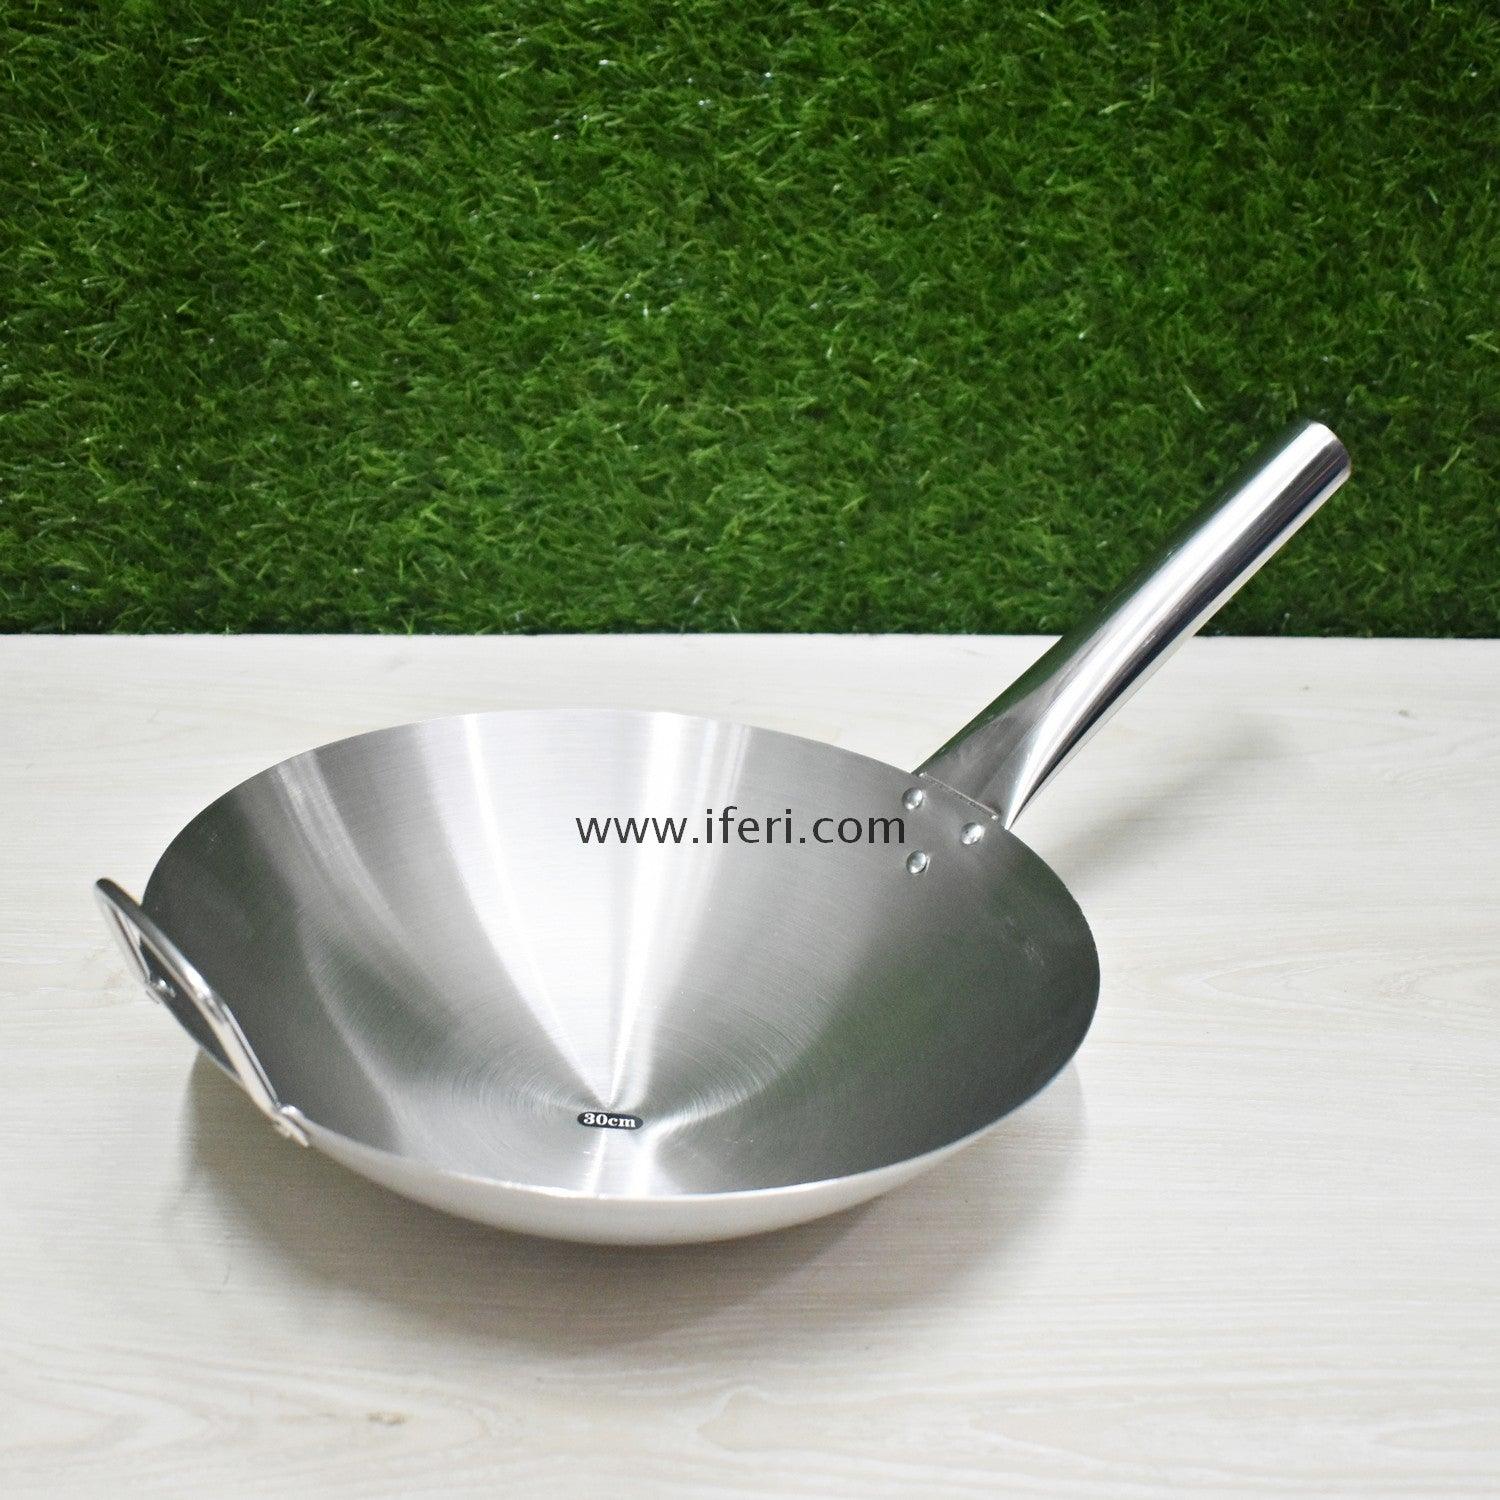 32cm Stainless Steel Cooking Karai TB8465 Price in Bangladesh - iferi.com